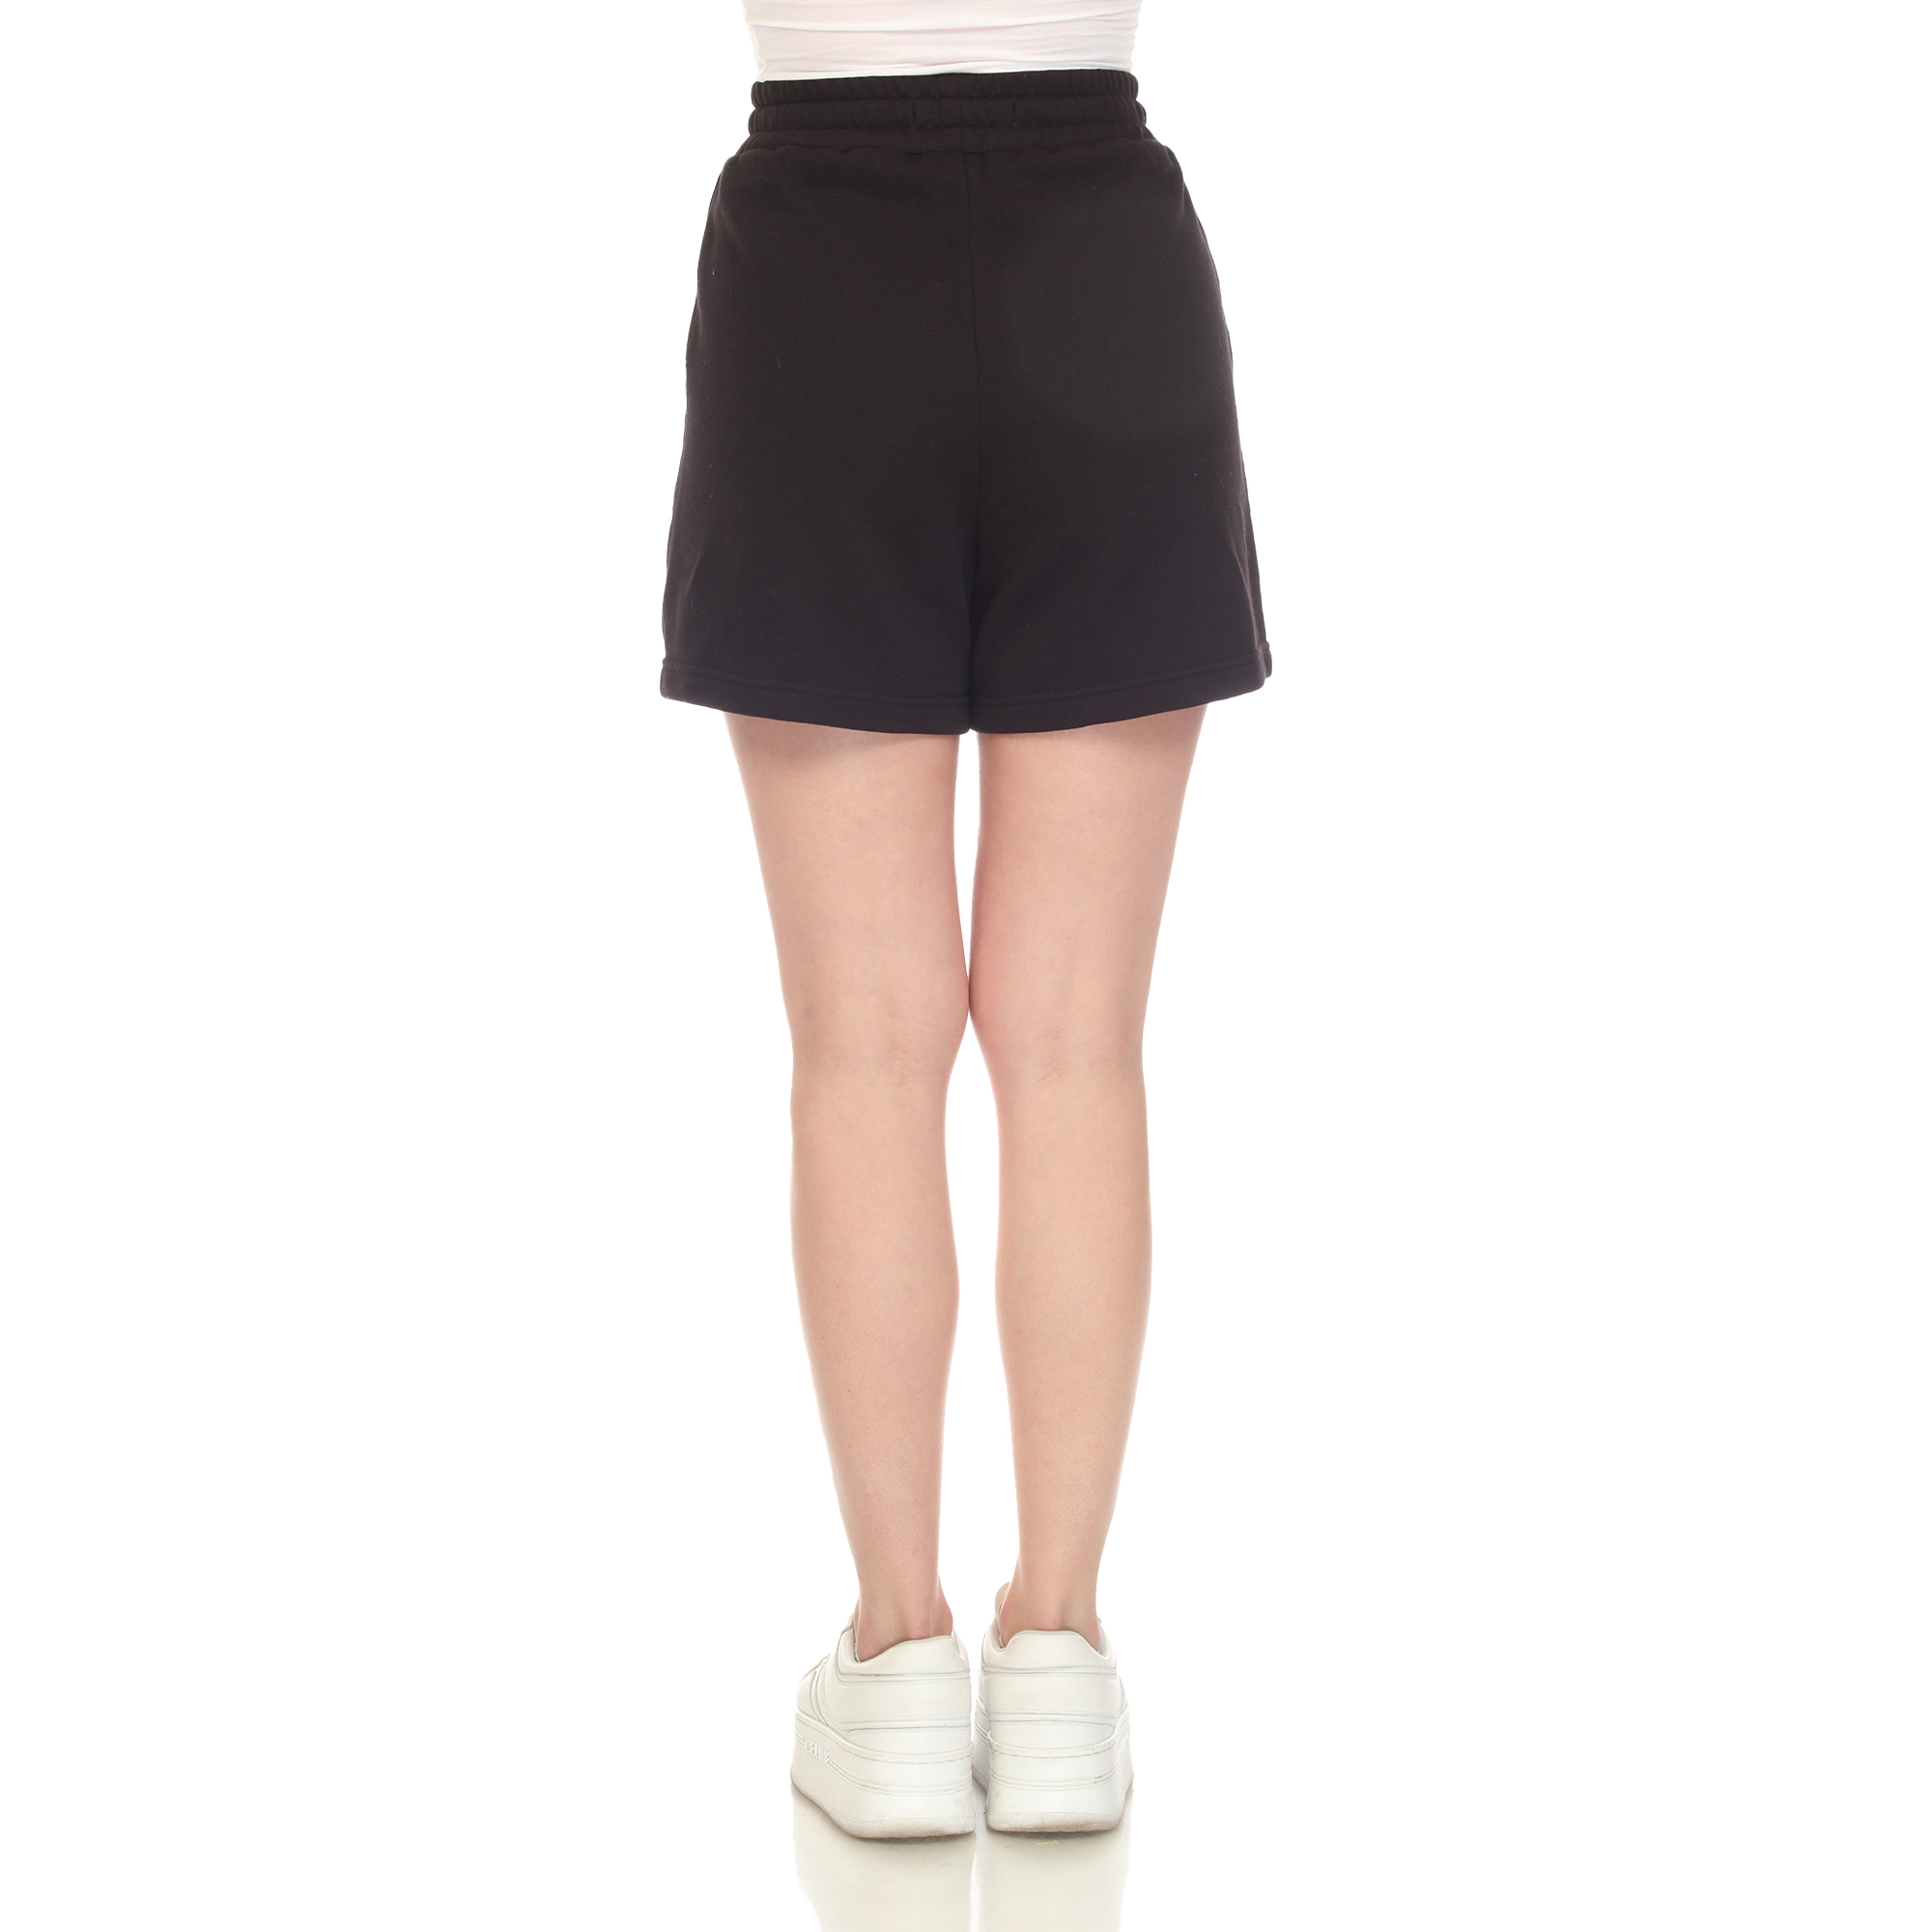 White Mark Women's Super Soft Drawstring Waistband Sweat Shorts - Sage, Large